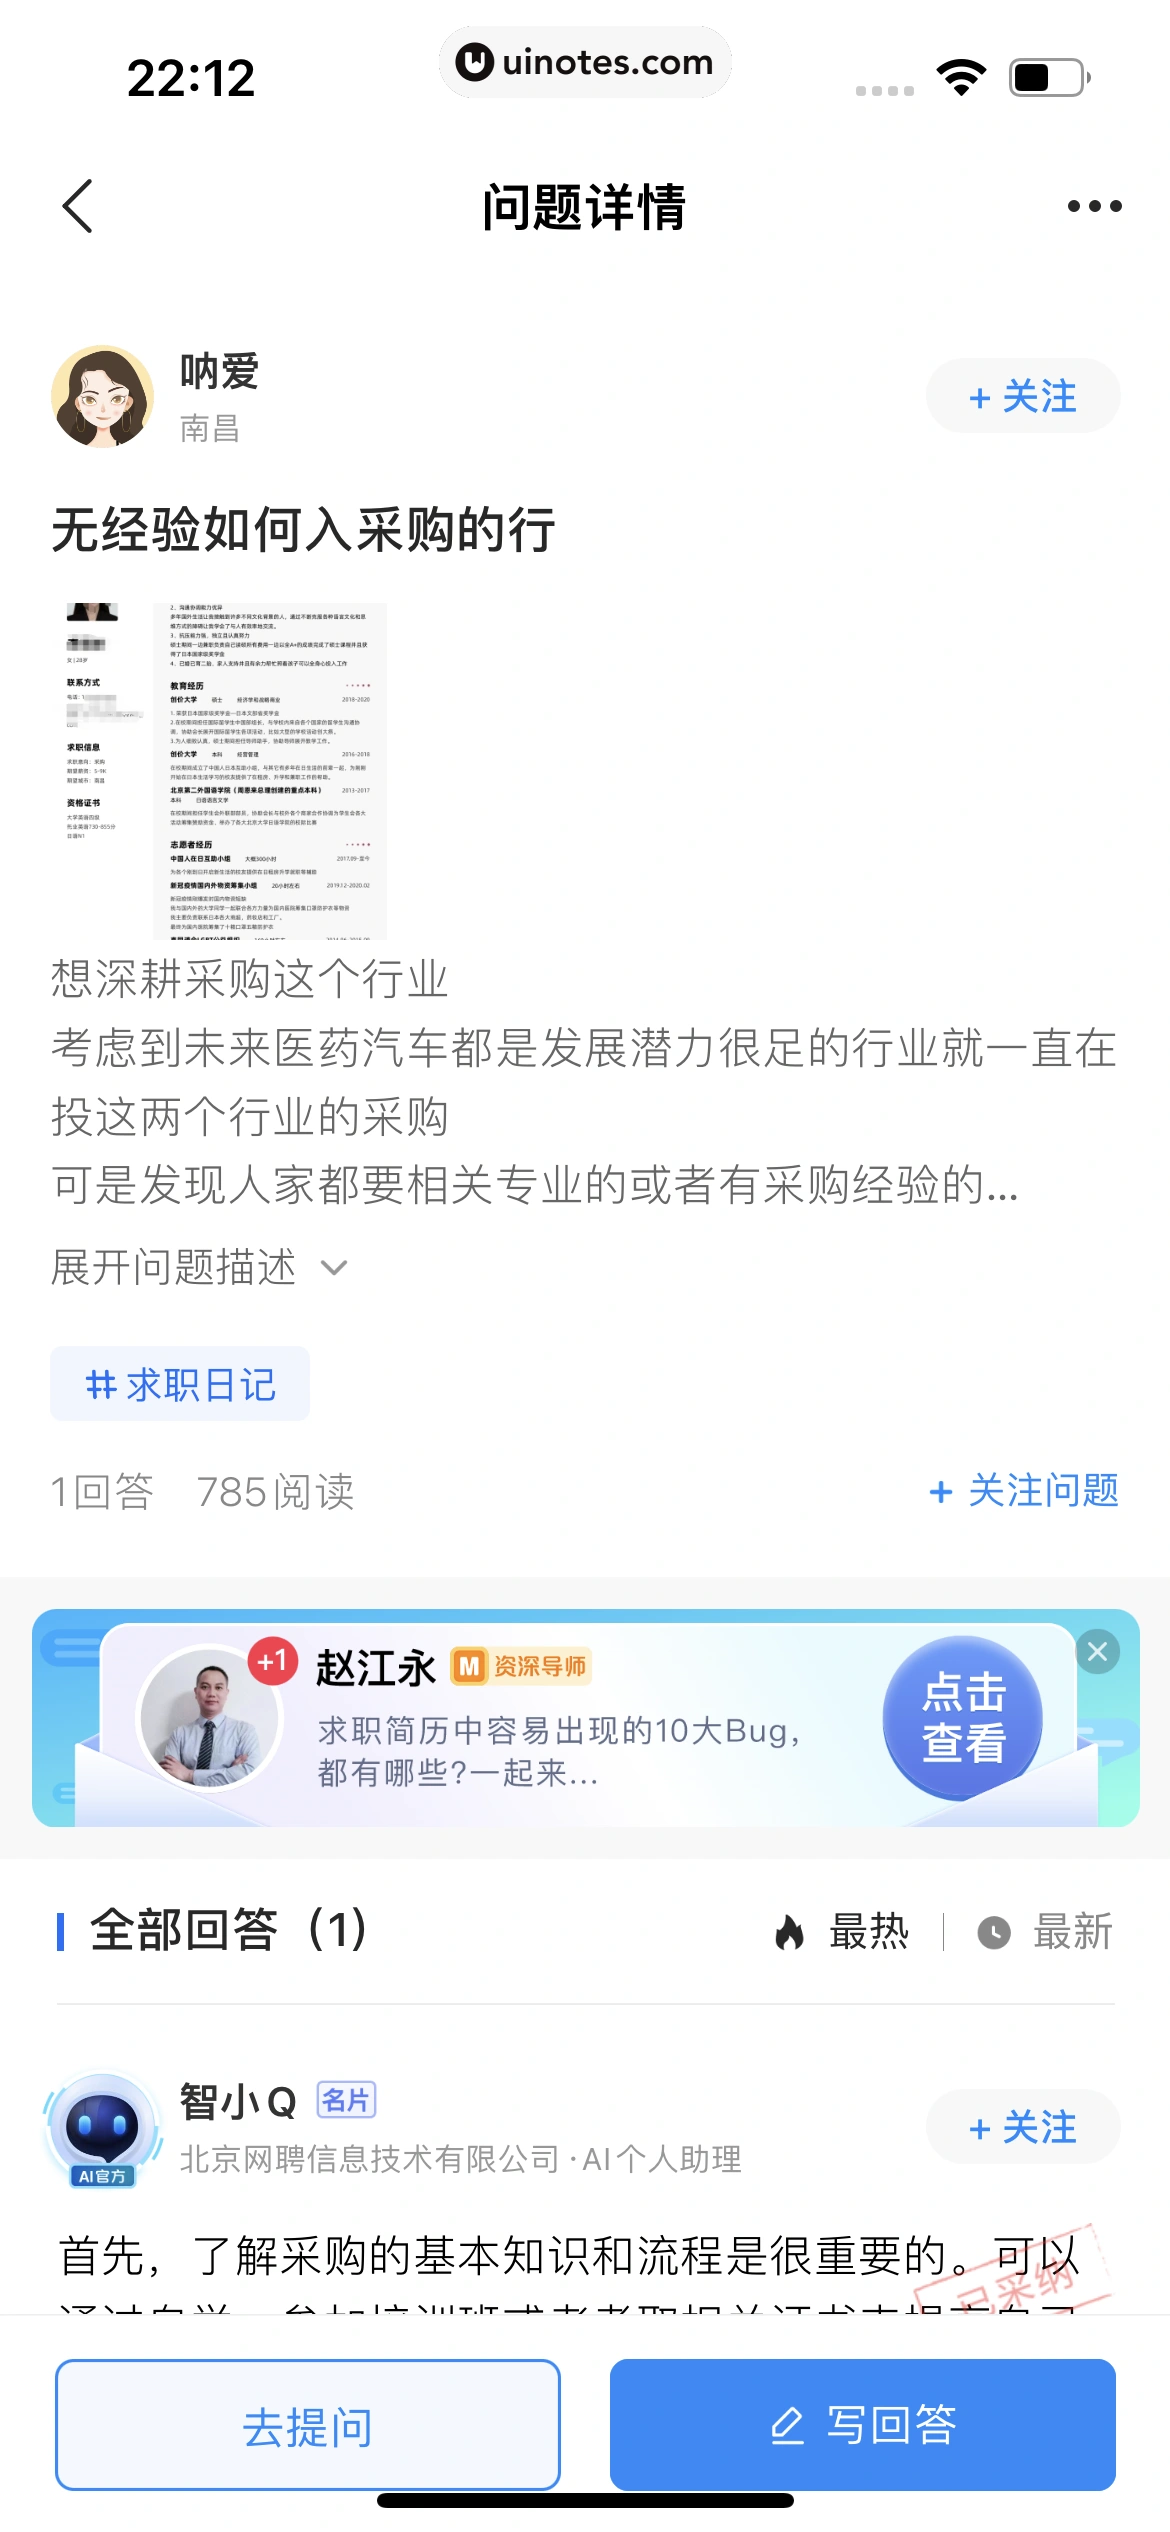 智联招聘 App 截图 185 - UI Notes